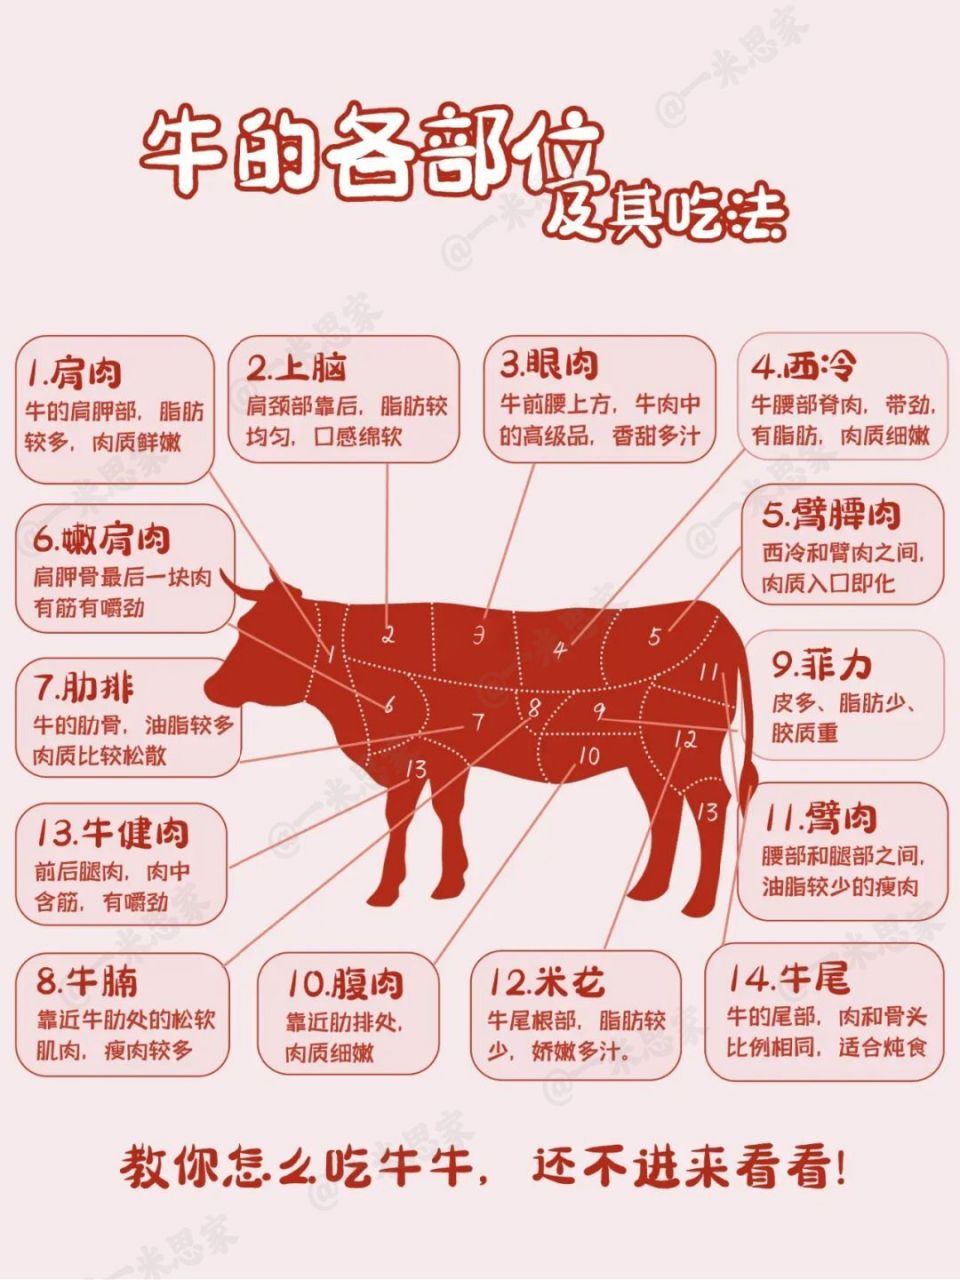 牛肉各部位的位置和吃法详情讲解 附图～简单易懂 牛肉含有丰富的蛋白